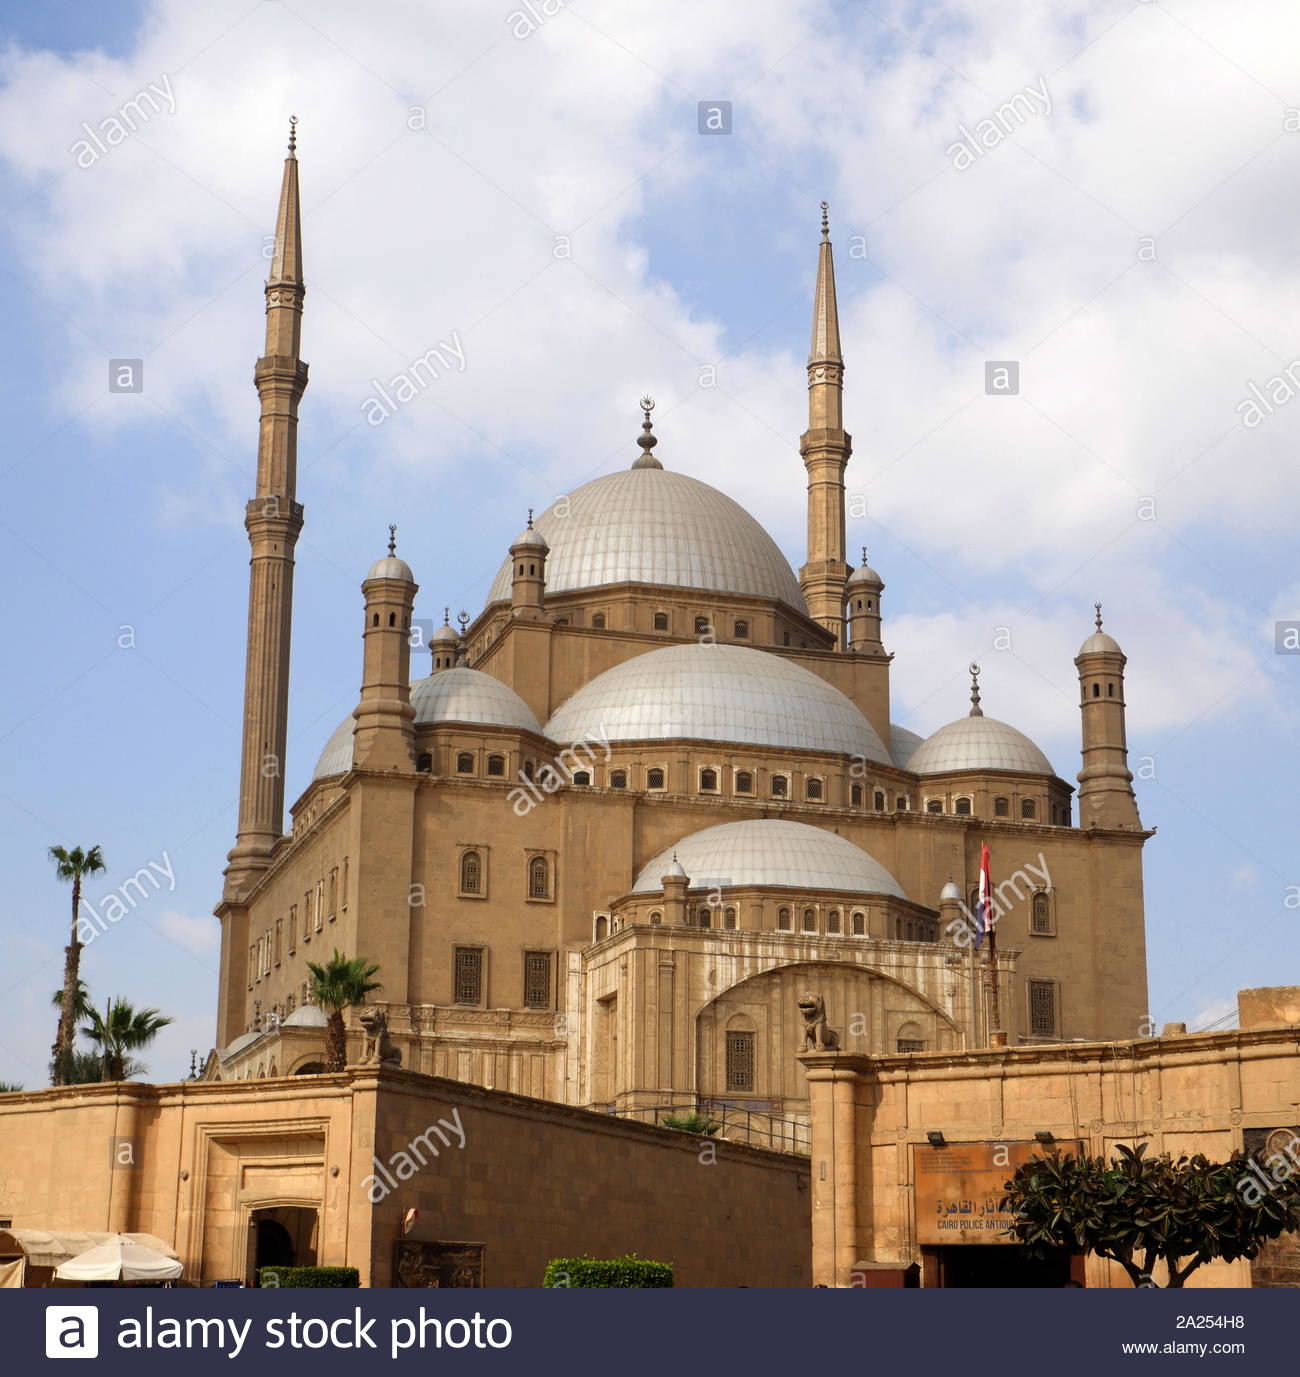 La grande moschea di Muhammad Ali Pasha o la moschea di alabastro, nella Cittadella del Cairo in Egitto. commissionato da Muhammad Ali Pasha tra il 1830 e il 1848. Situato sulla cima della cittadella, questa moschea ottomana, il più grande di essere costruita nella prima metà del XIX secolo. La moschea è stata costruita in memoria di Tusun Pascià, Muhammad Ali più antichi del figlio che morì nel 1816. Foto Stock